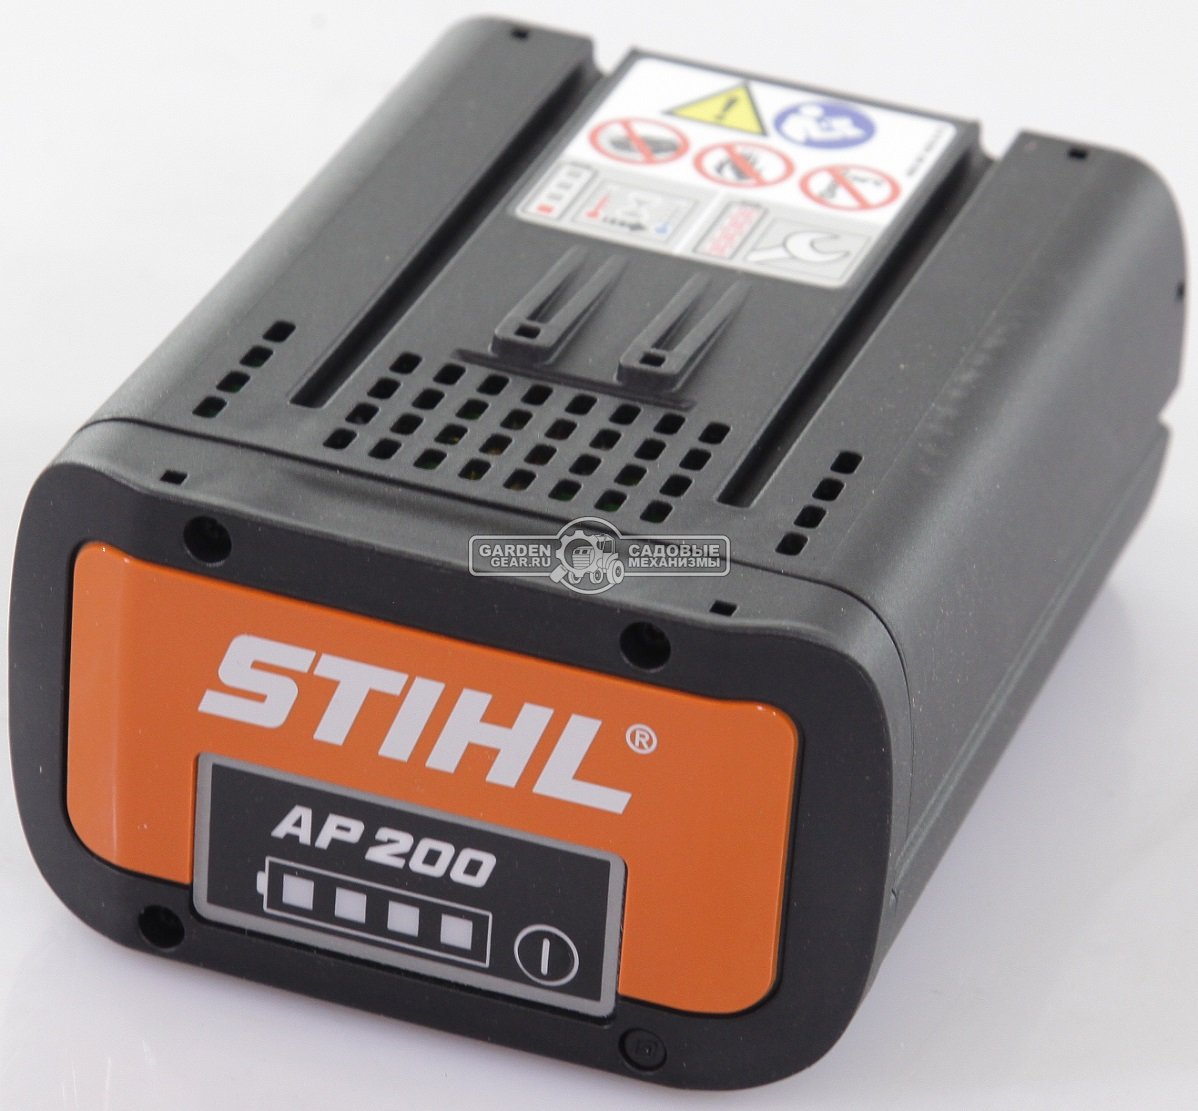 Аккумулятор Stihl AP 200 (POL, 36В Pro, 187 Вт/ч., 5,2 А/ч., с индикатором заряда светодиод, 1,3 кг.)